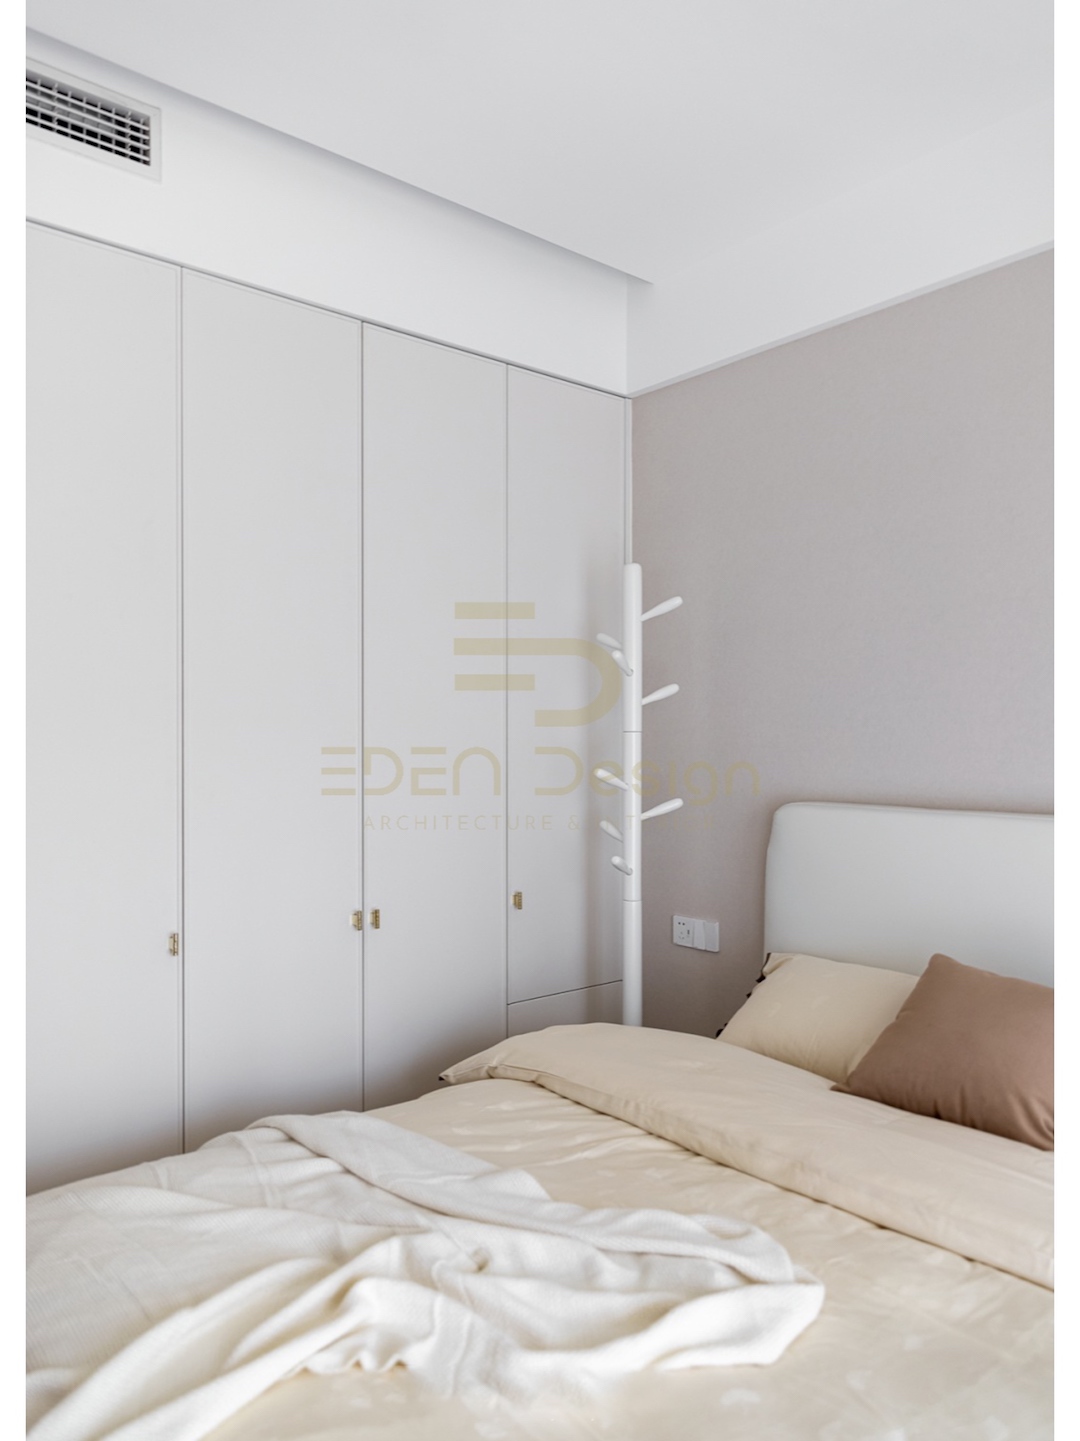 Thiết kế không gian phòng ngủ đẹp giúp cho giấc ngủ ngon hơn